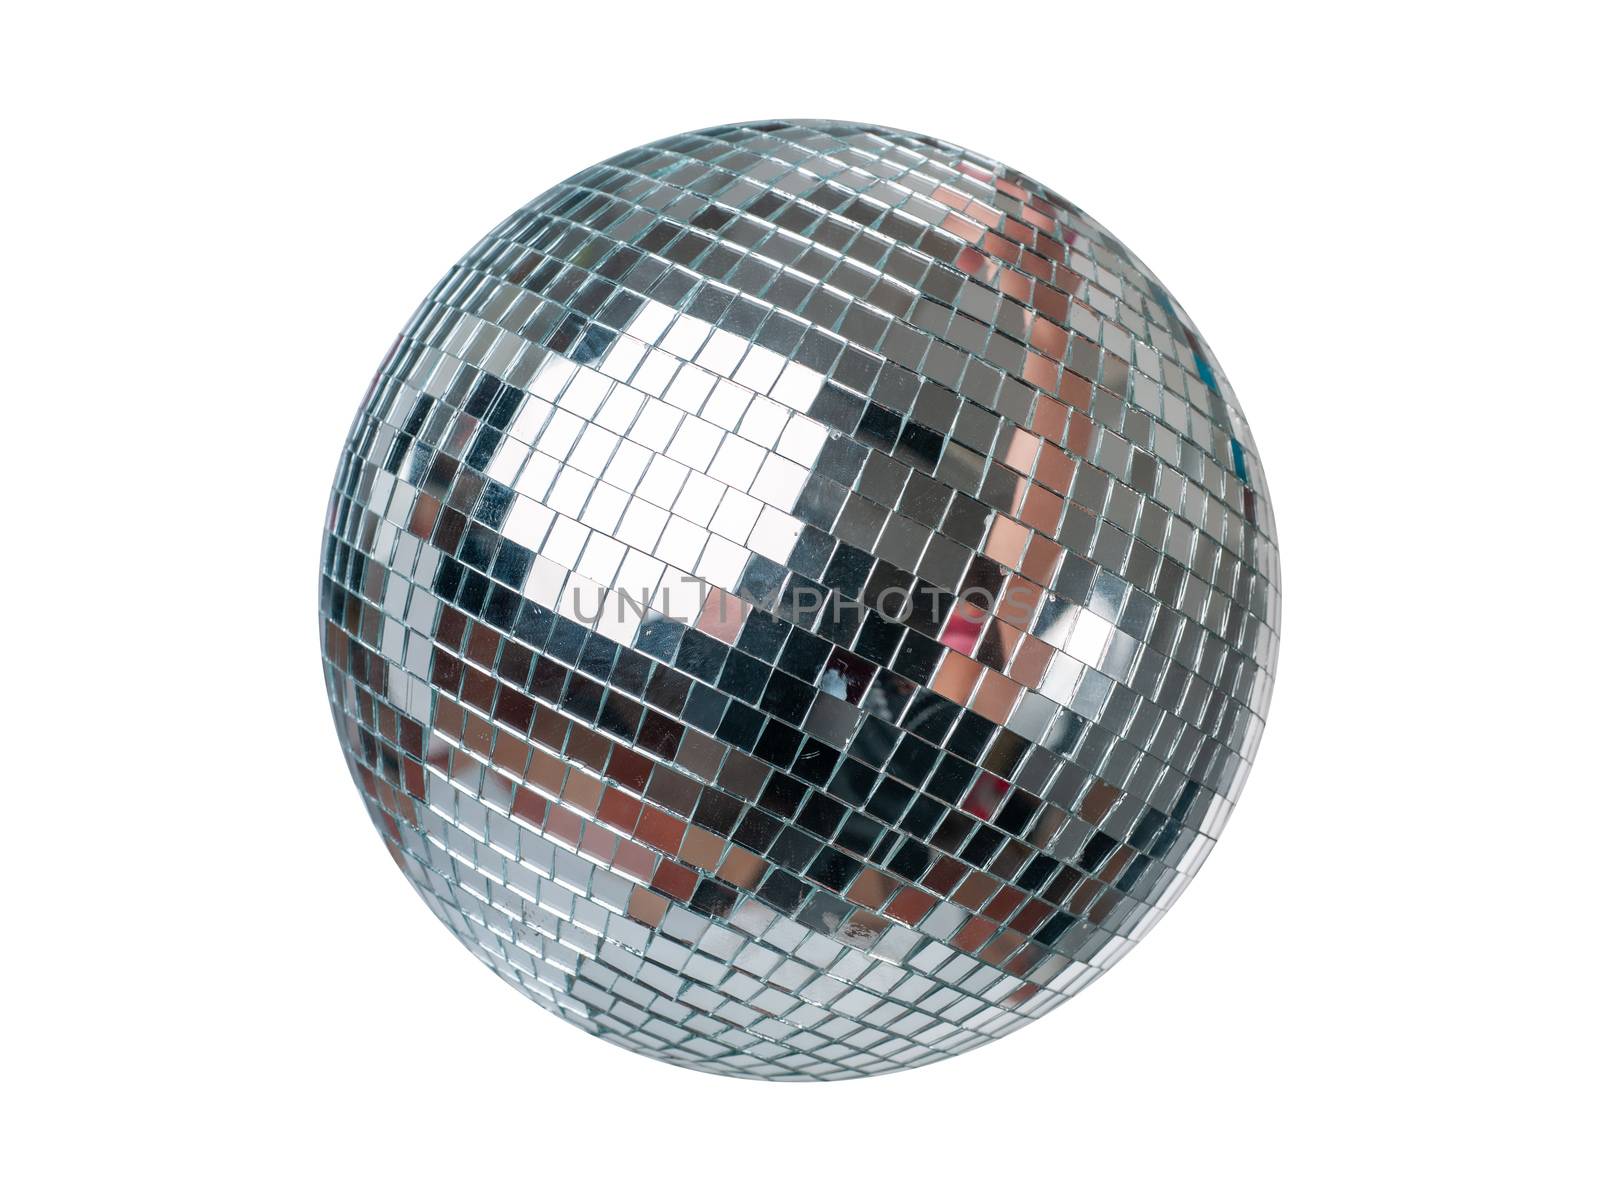 Disco Ball by adamr